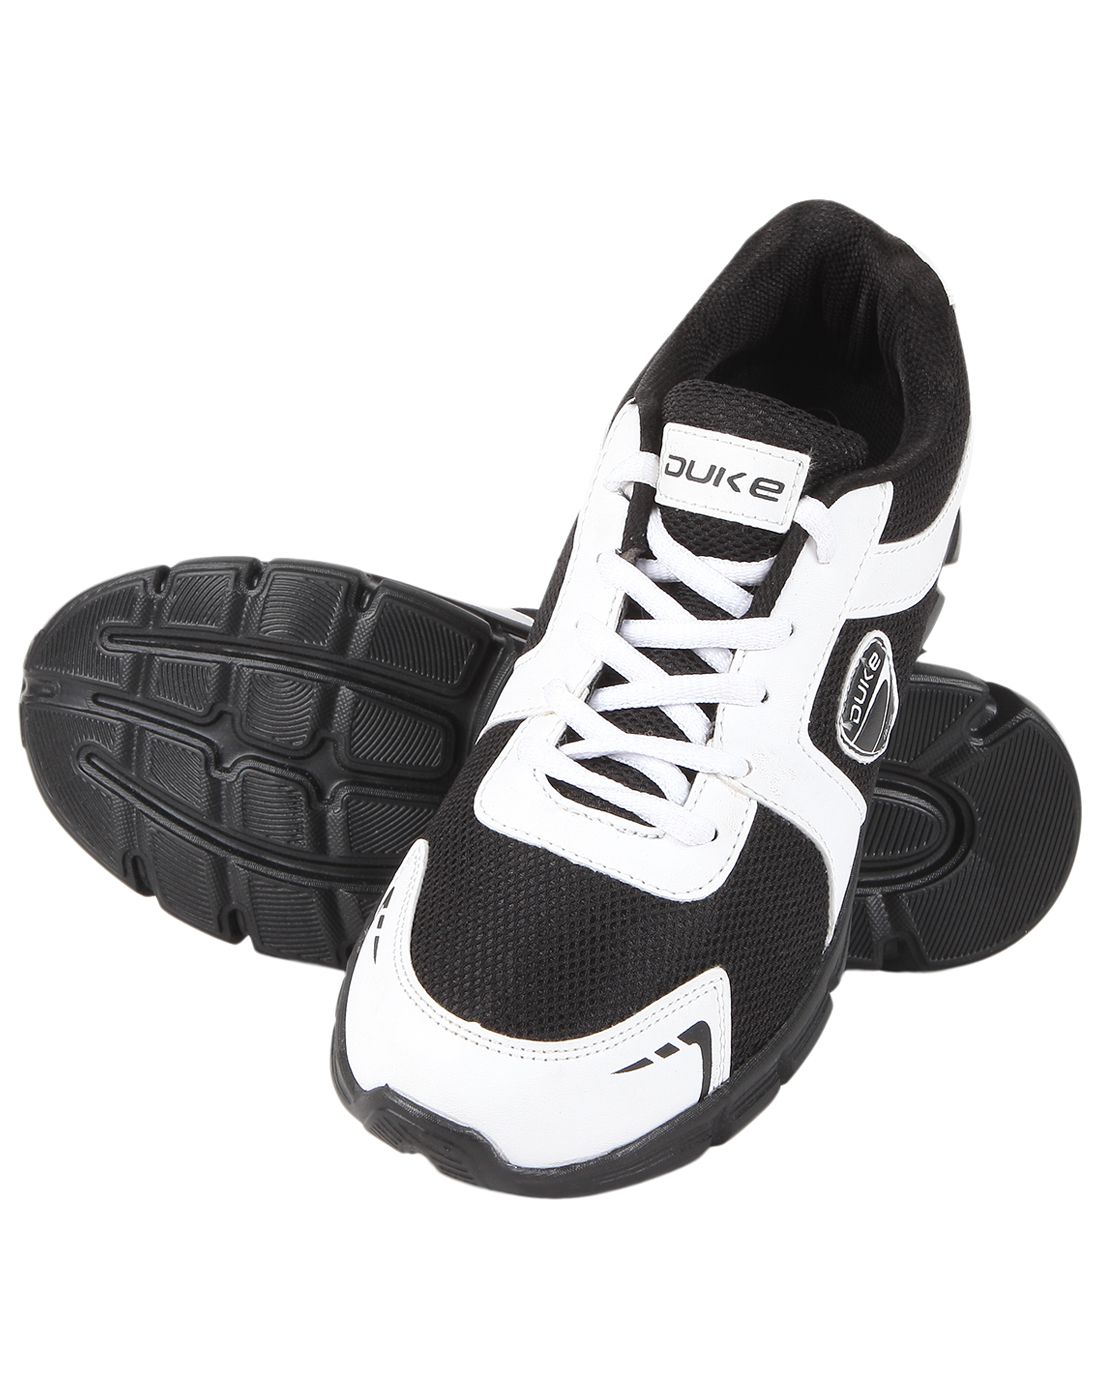 Duke Black Running Shoes - Buy Duke Black Running Shoes Online at Best ...